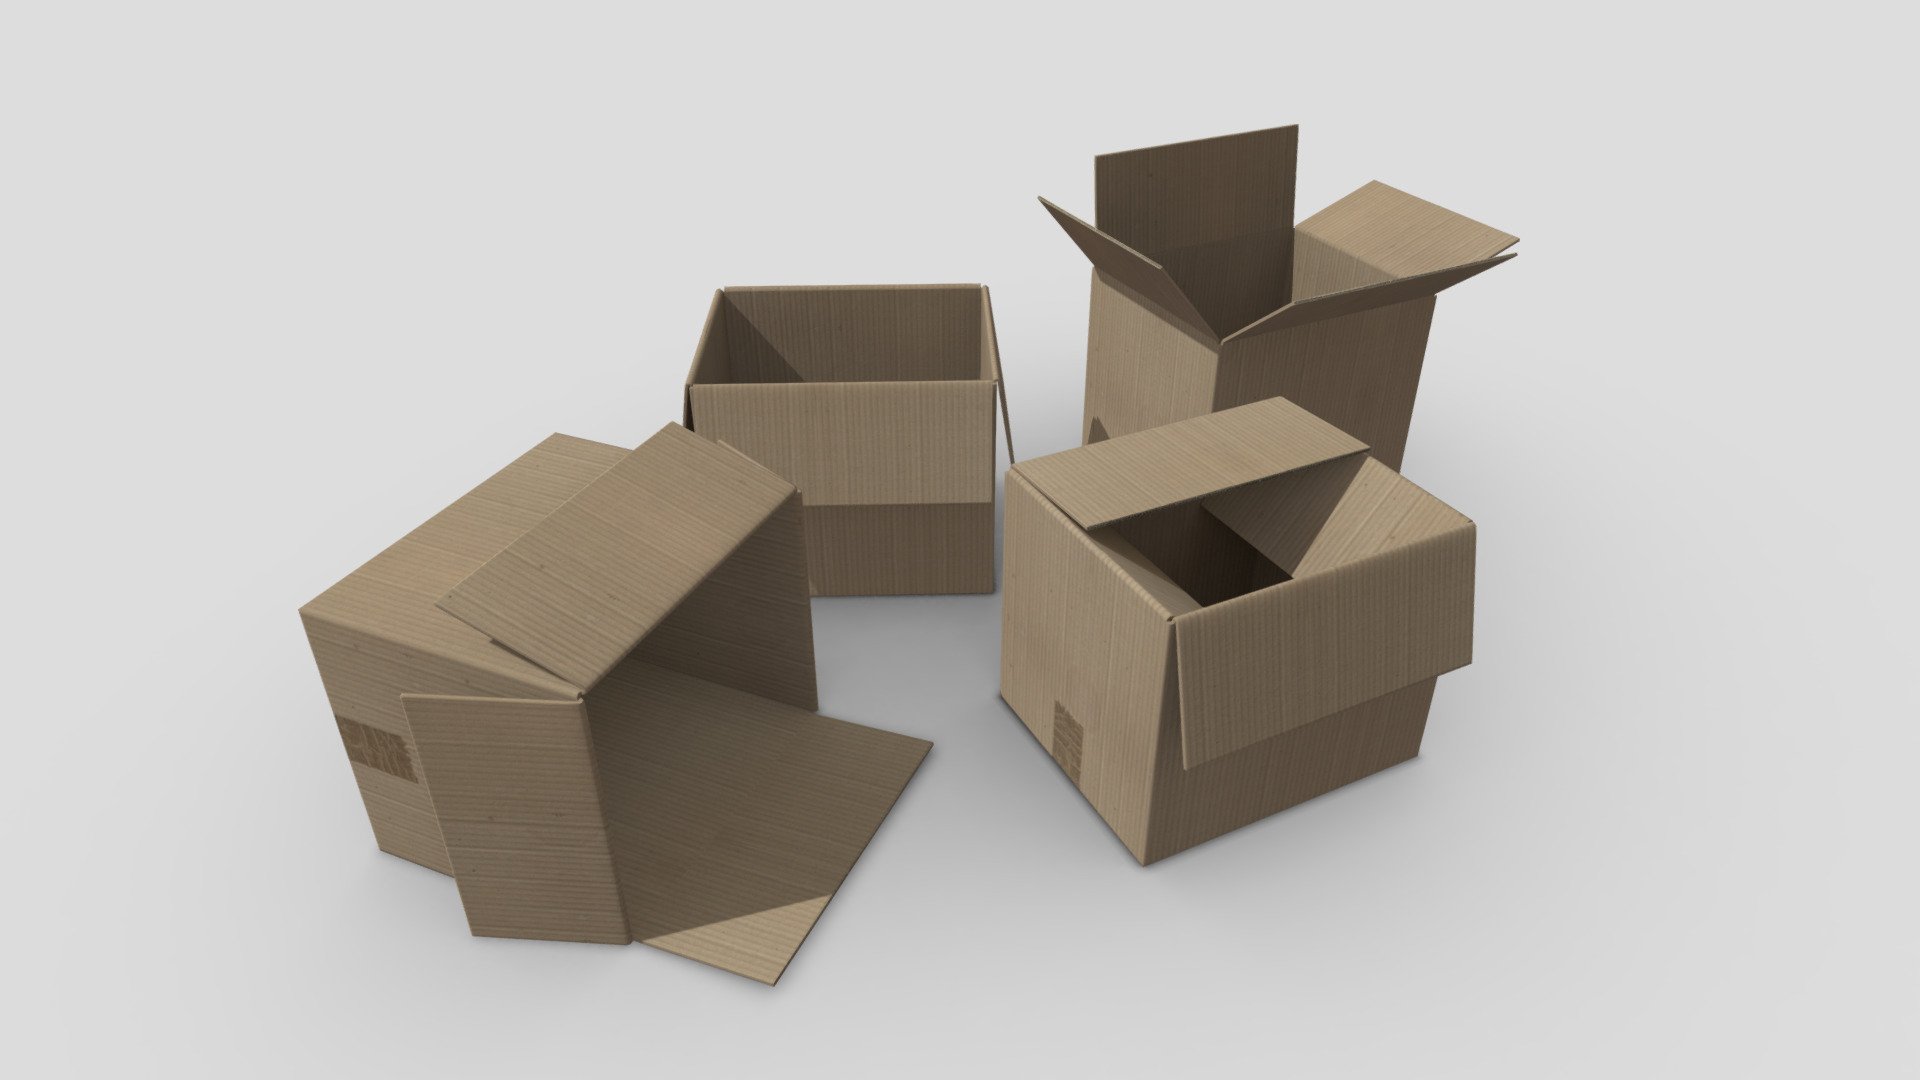 Game box 3. 3d model Termo Box. Low Poly Box 3d. 3d модель коробки ссп99. 3d model коробки флебодия.